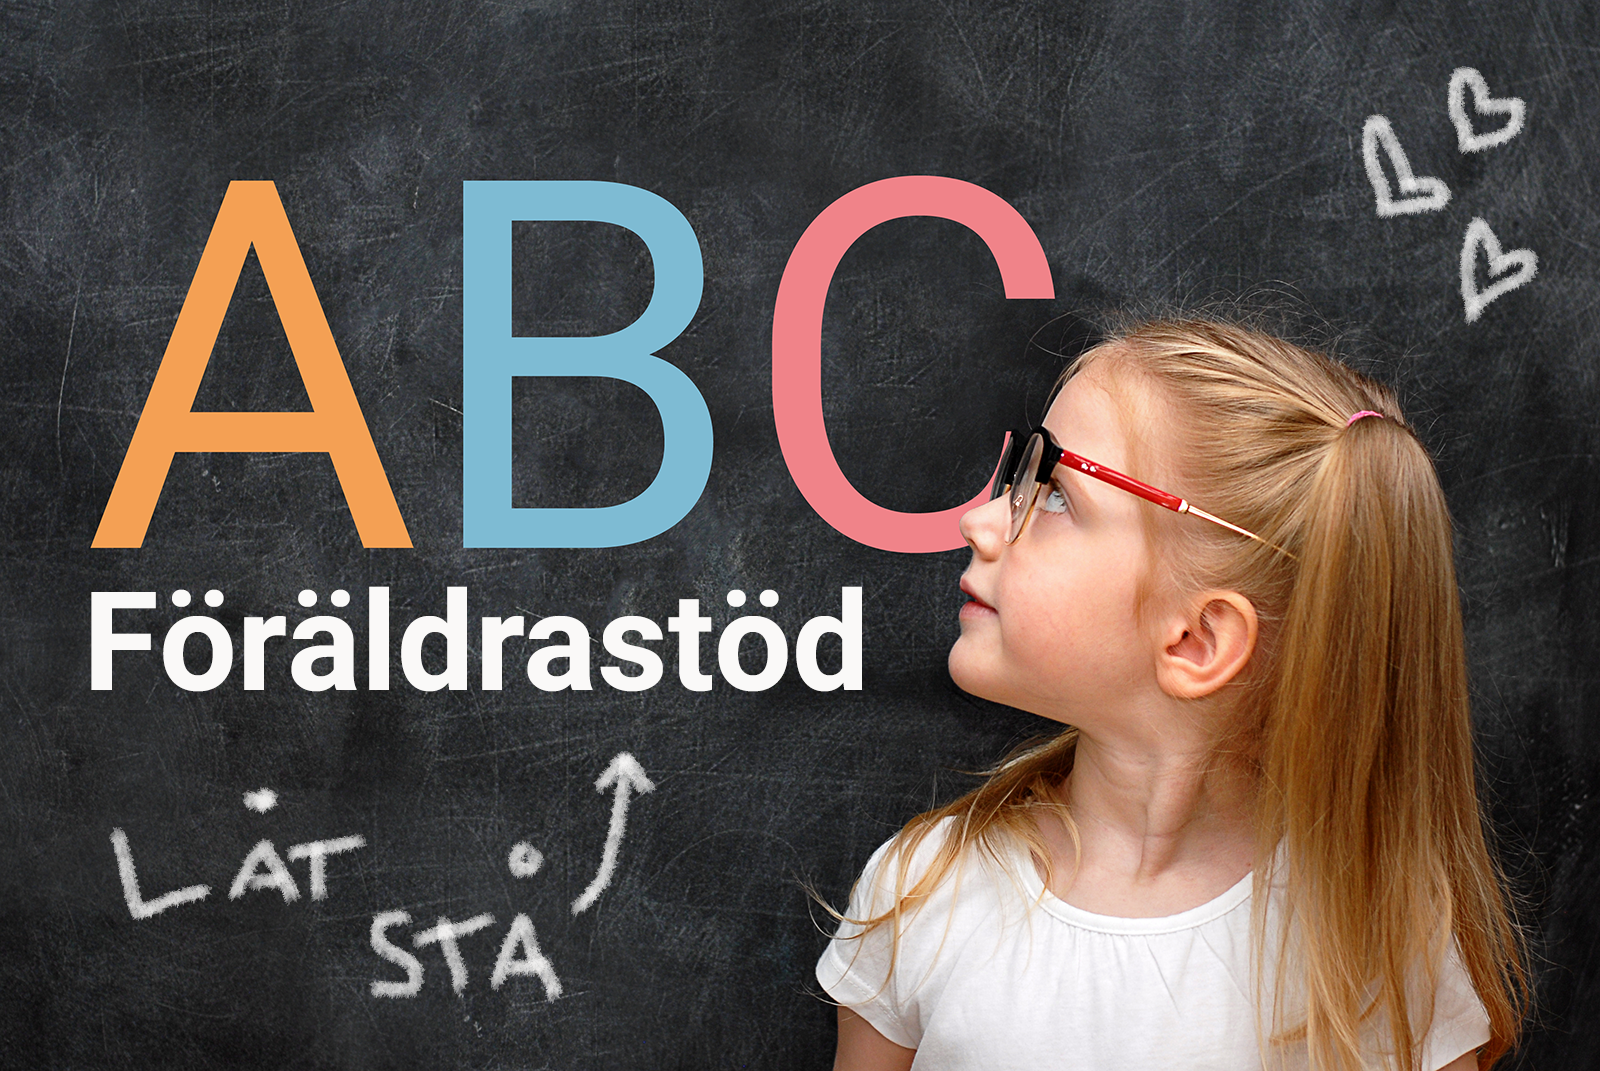 En flicka tittar upp på en griffeltavla. På tavlan står det "ABC Föräldrastöd - Låt stå!"